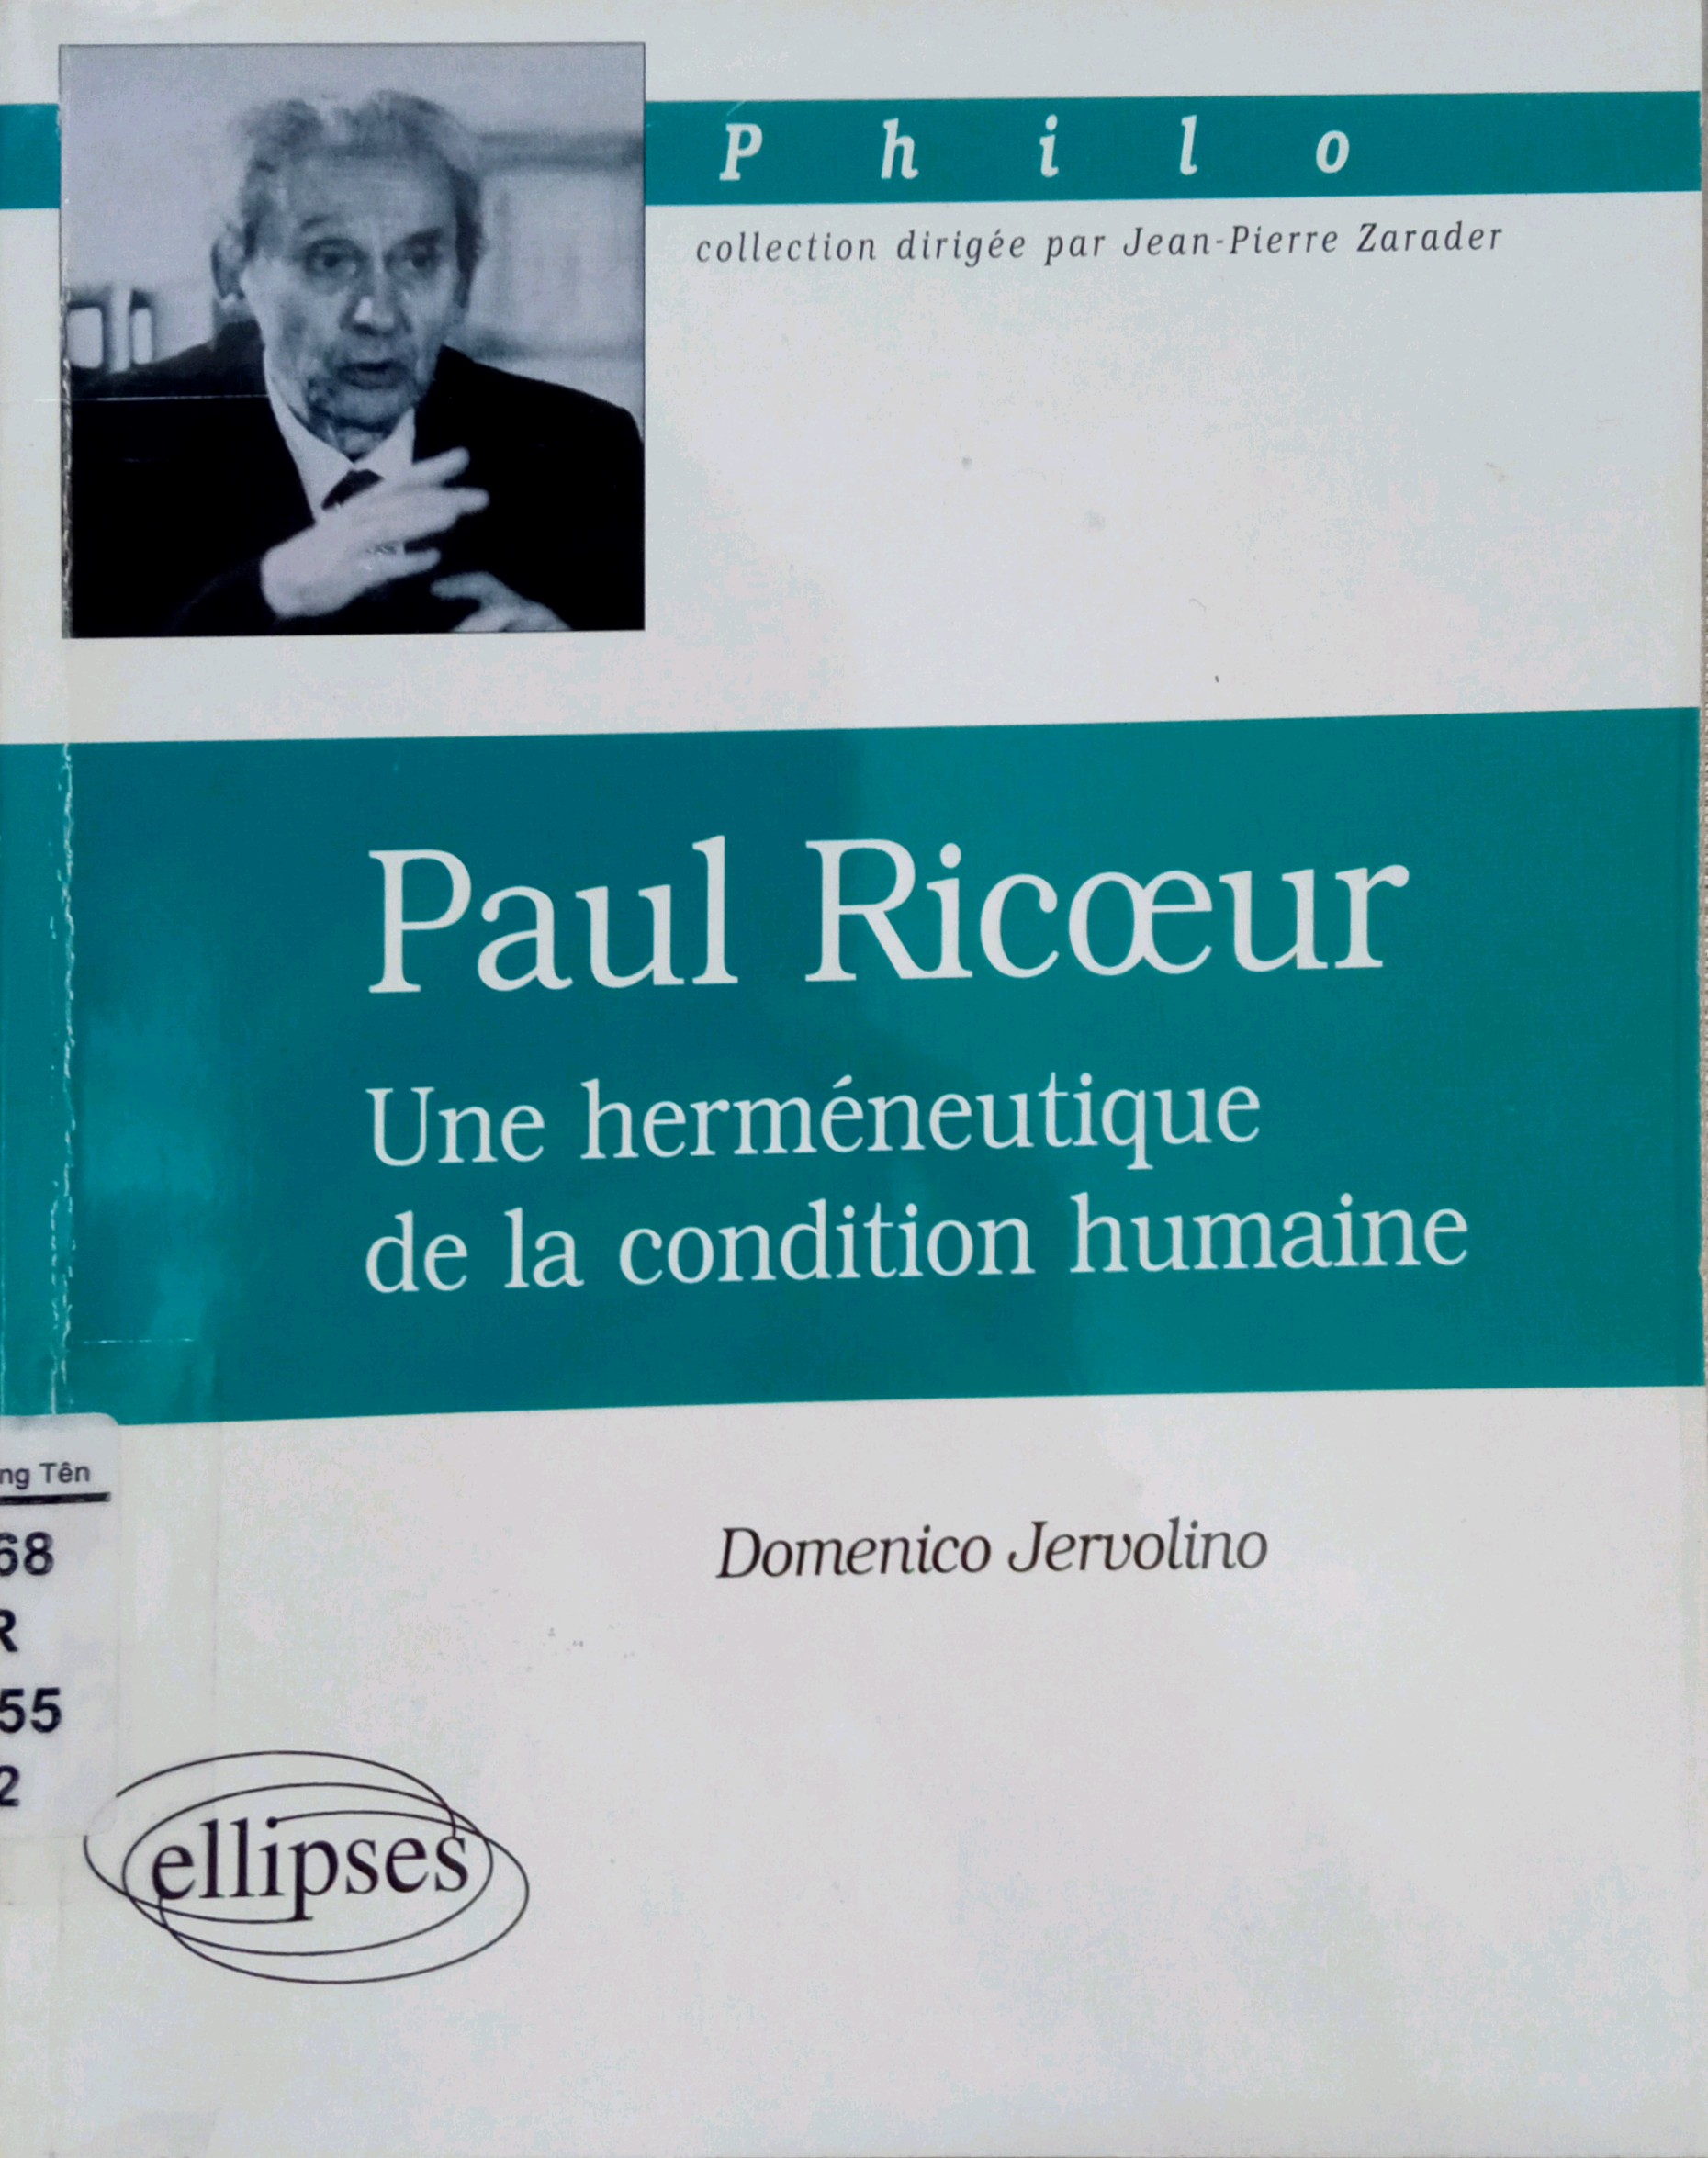 PAUL RICOEUR: UNE HERMÉNEUTIQUE DE LA CONDITION HUMAINE